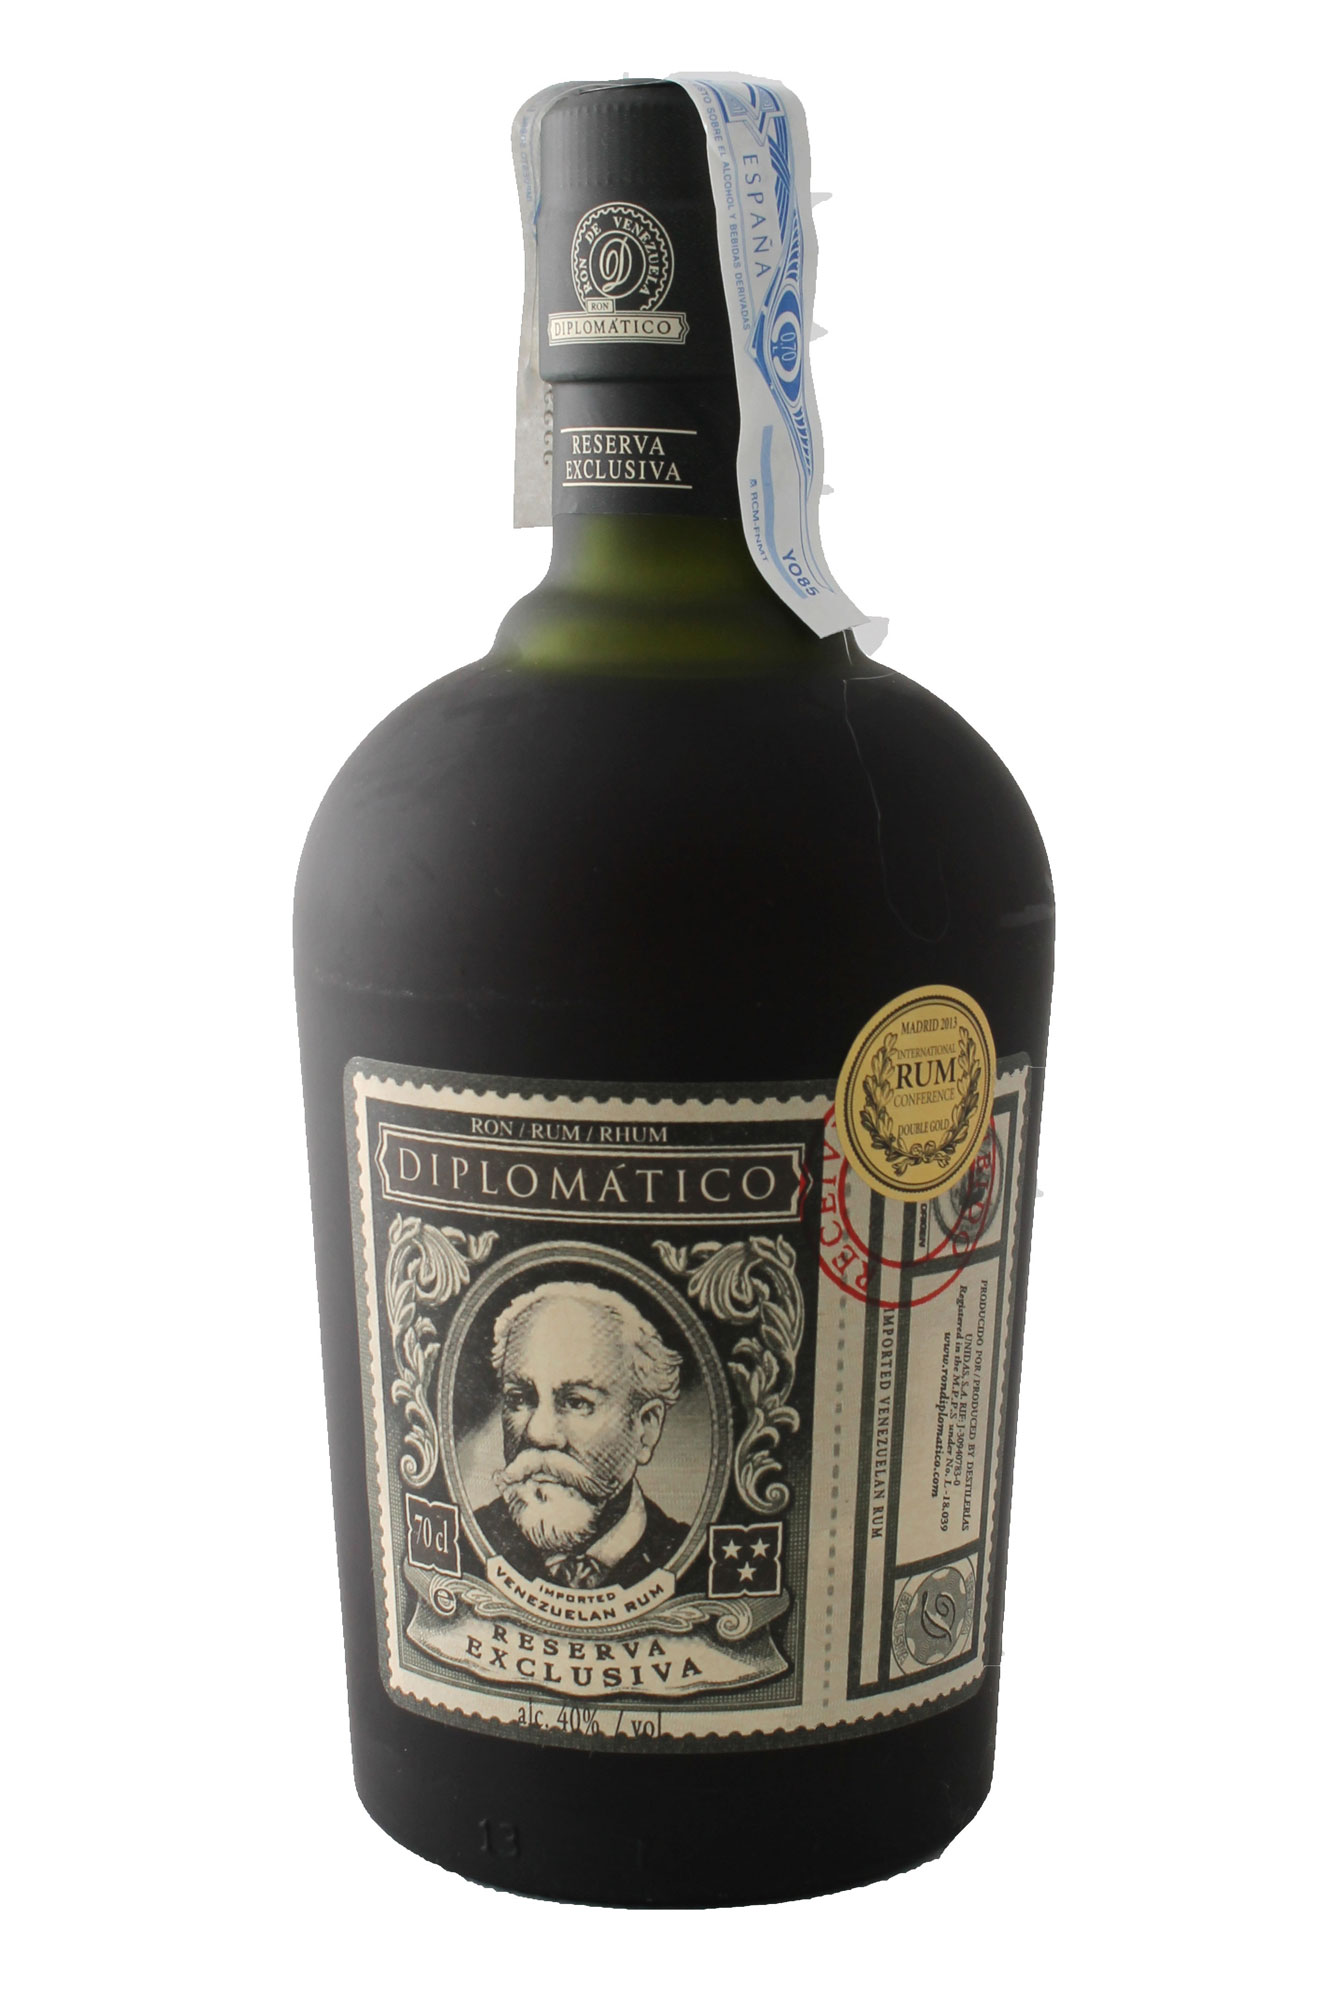 Diplomatico Exclusiva Reserva Rum Bottiglia 70 cl